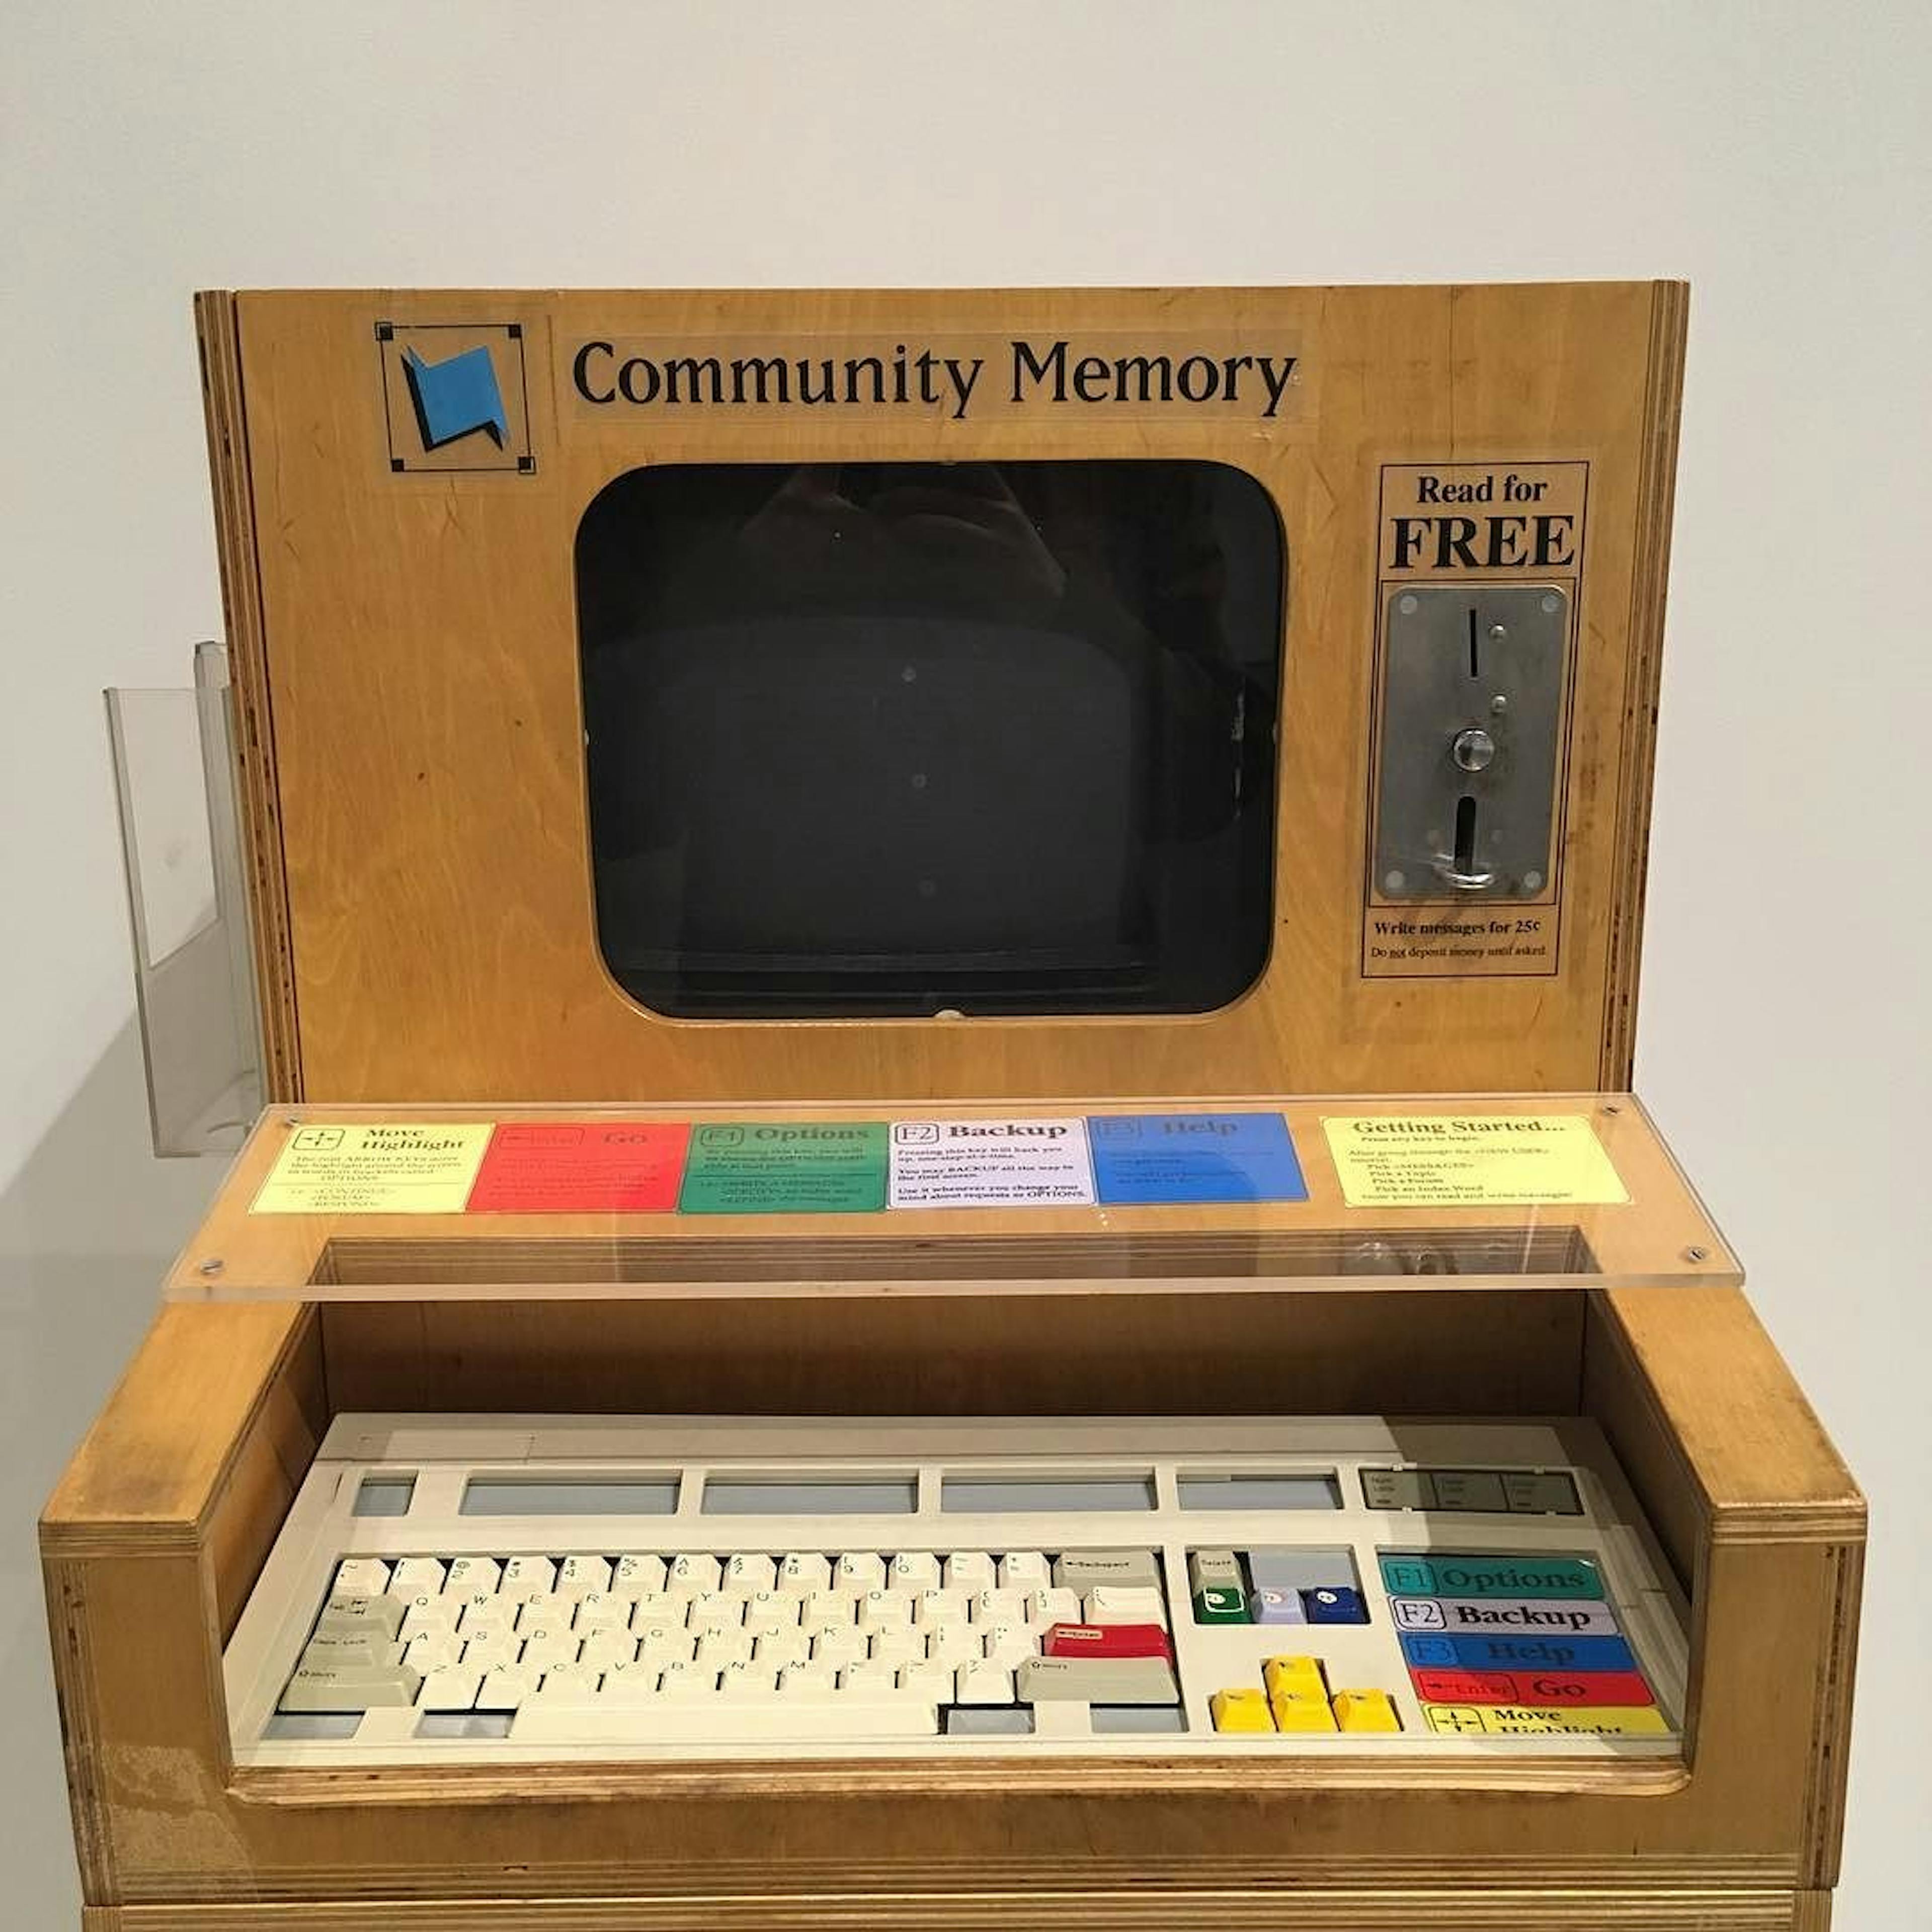 Thiết bị đầu cuối bộ nhớ cộng đồng tại Bảo tàng Lịch sử Máy tính (California). Hình ảnh của Evan P. Cordes / Wikimedia